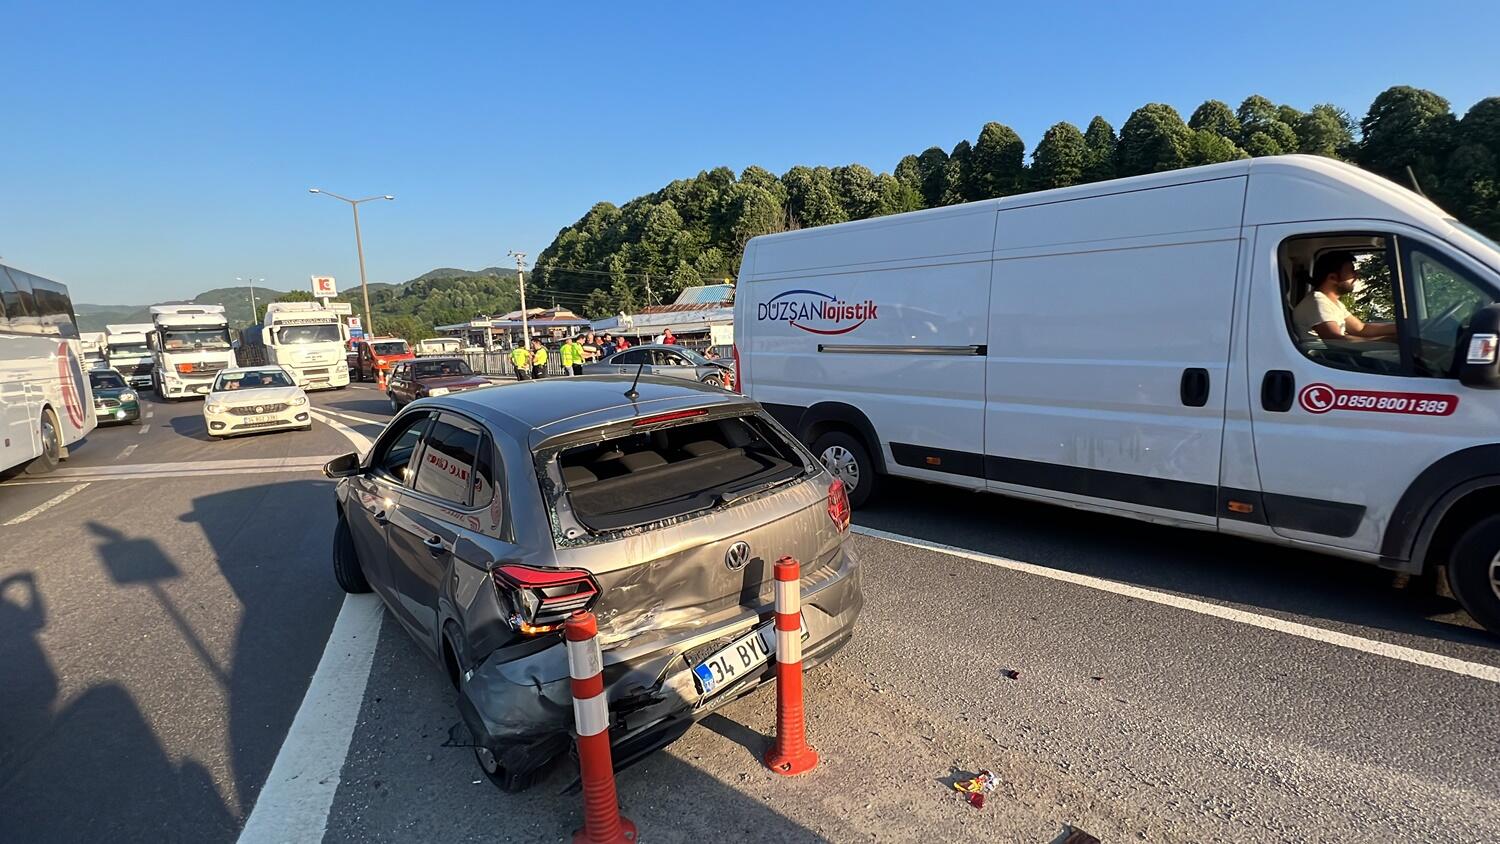 TEM Otoyolu Kaynaşlı gişelerinde iki otomobil çarpıştı: 9 yaralı